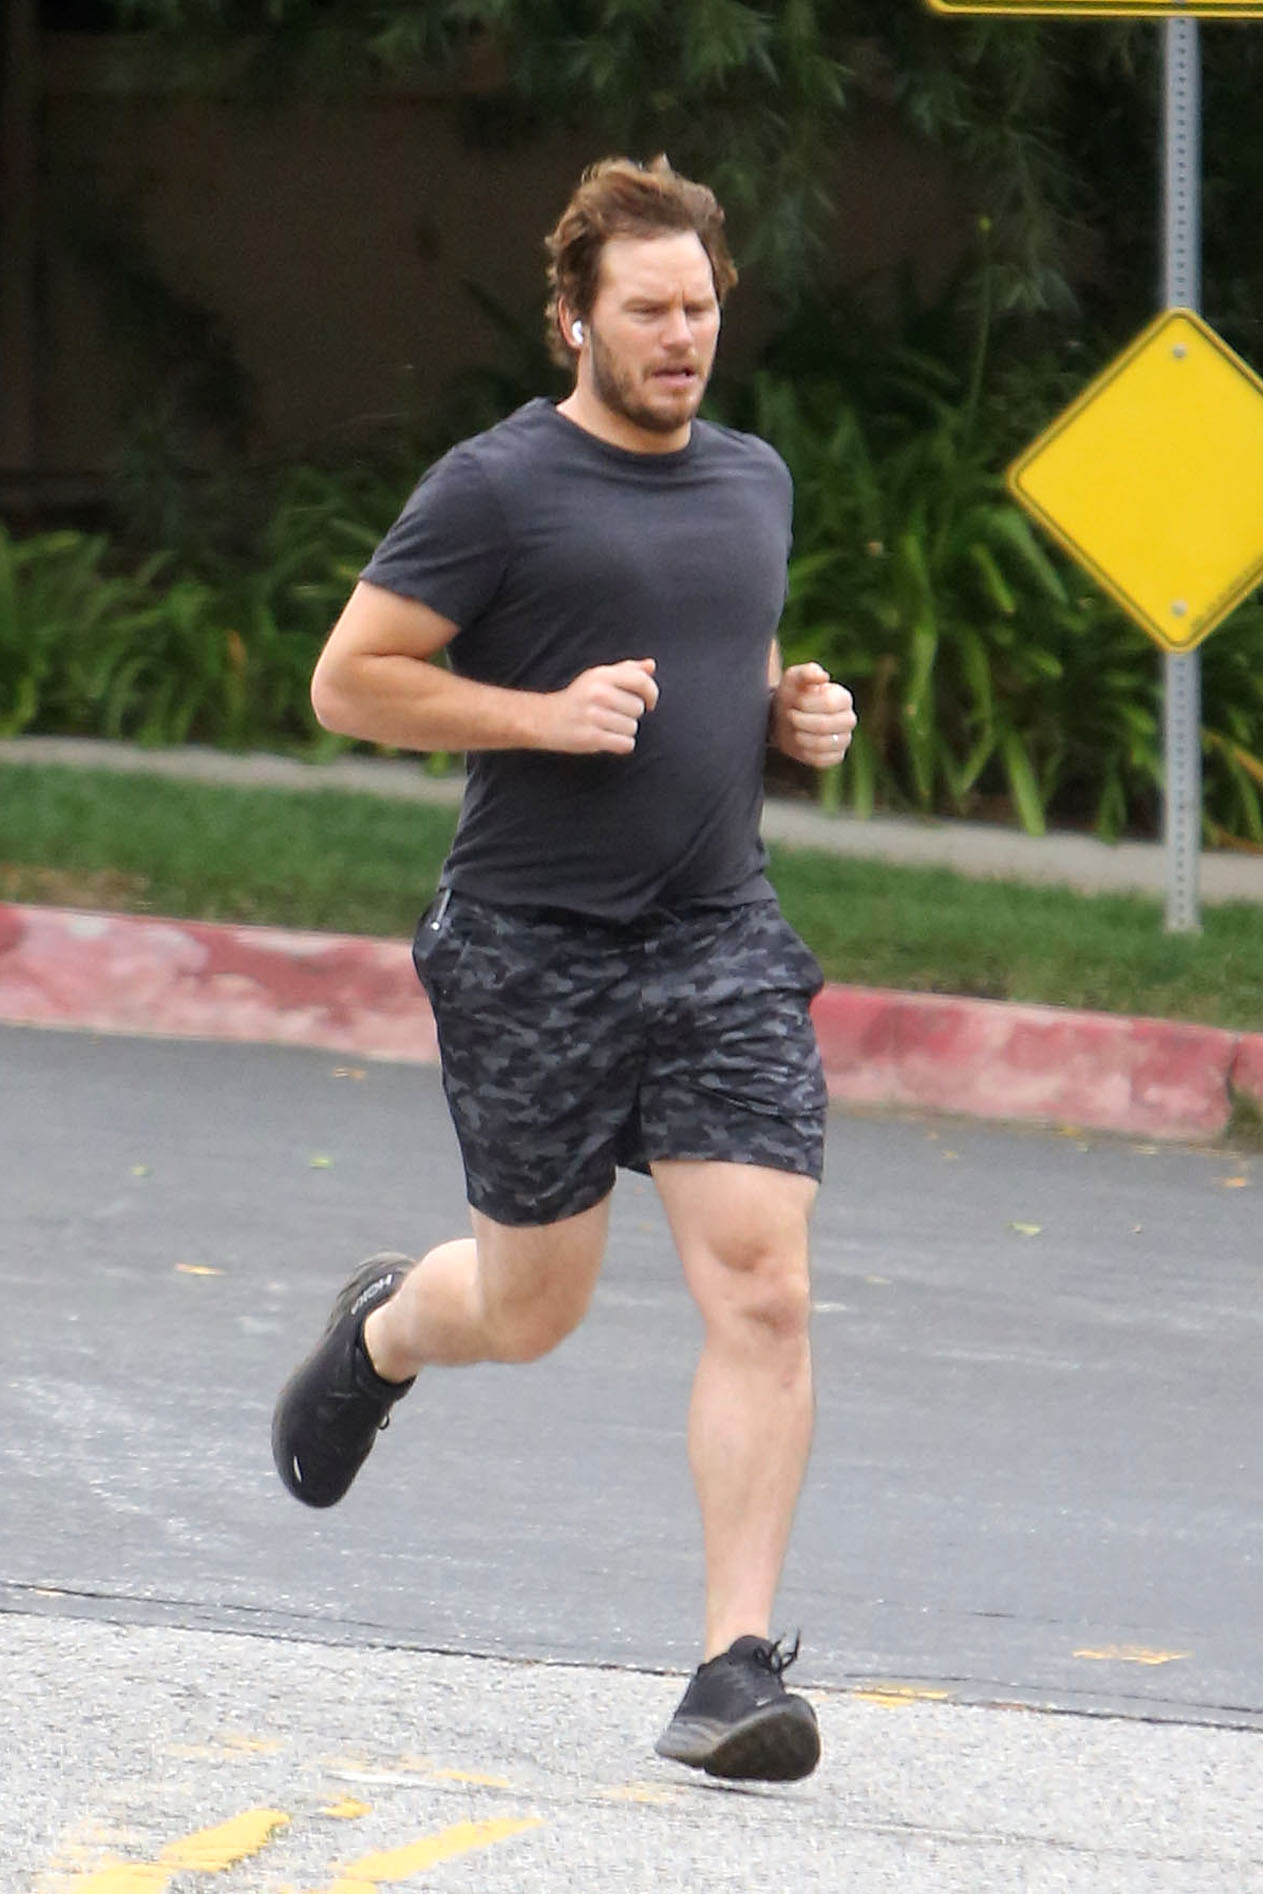 Día de entrenamiento. Chris Pratt salió a correr por las calles de su vecindario en Los Ángeles. Llevaba puesto short, remera y zapatillas negras y además fue escuchando música en sus auriculares